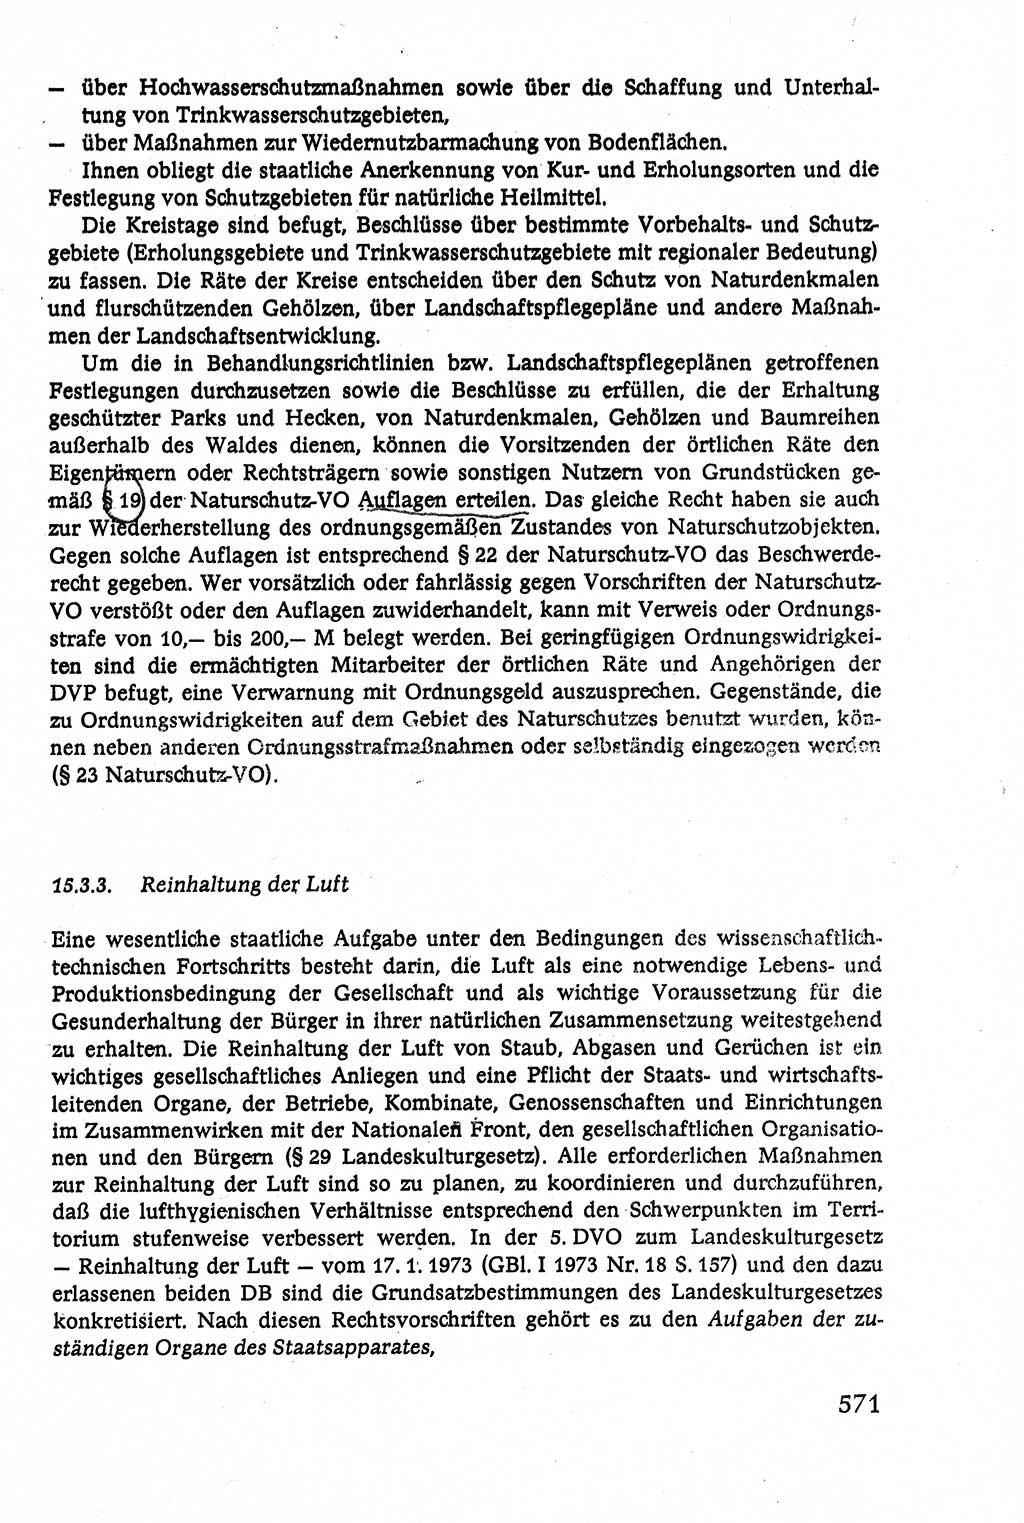 Verwaltungsrecht [Deutsche Demokratische Republik (DDR)], Lehrbuch 1979, Seite 571 (Verw.-R. DDR Lb. 1979, S. 571)